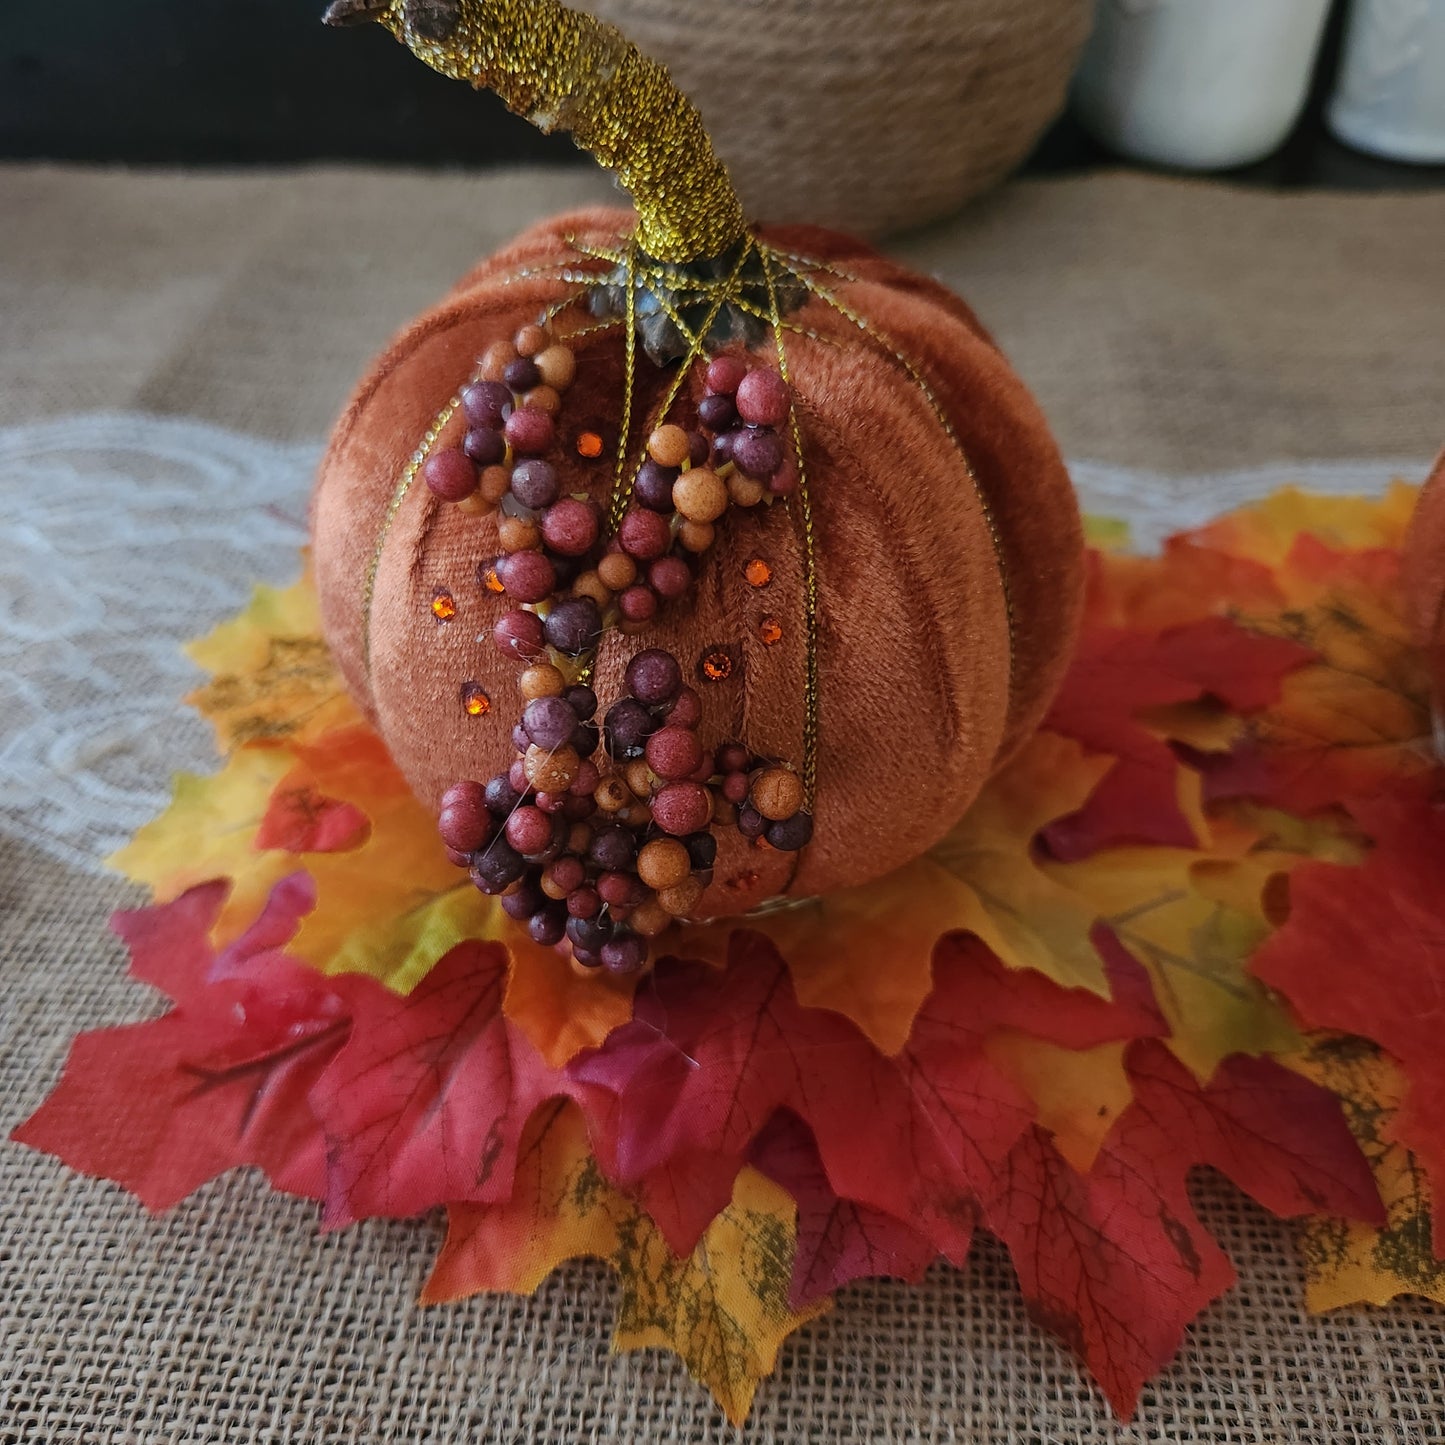 Pumpkin and Fallen Leaves set